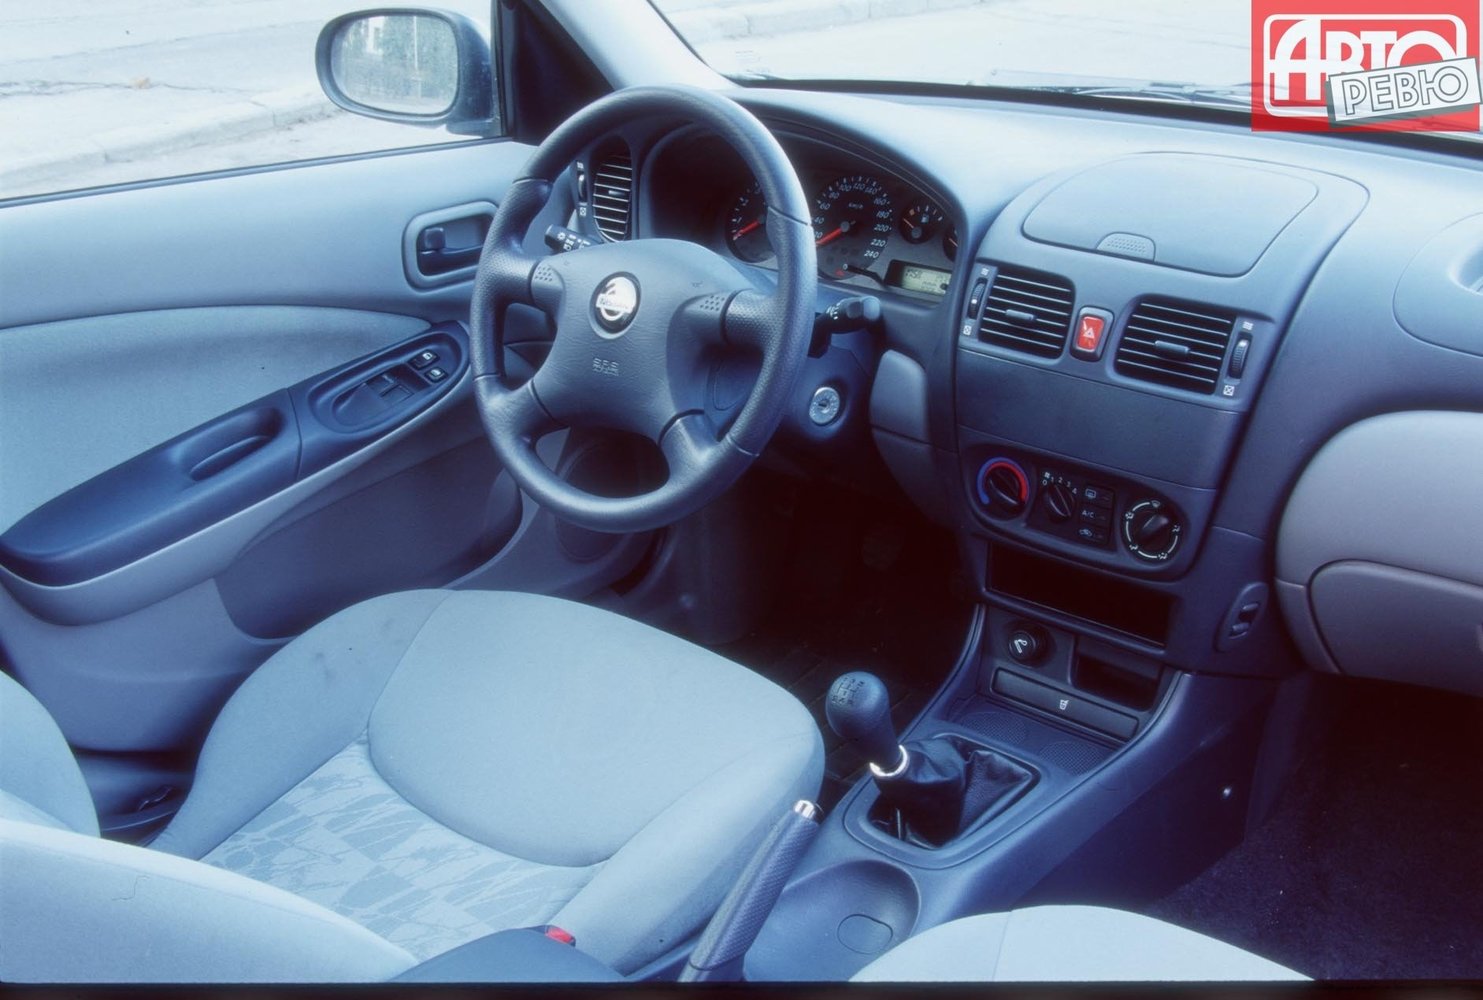 хэтчбек 5 дв. Nissan Almera 2000 - 2003г выпуска модификация 1.8 MT (114 л.с.)